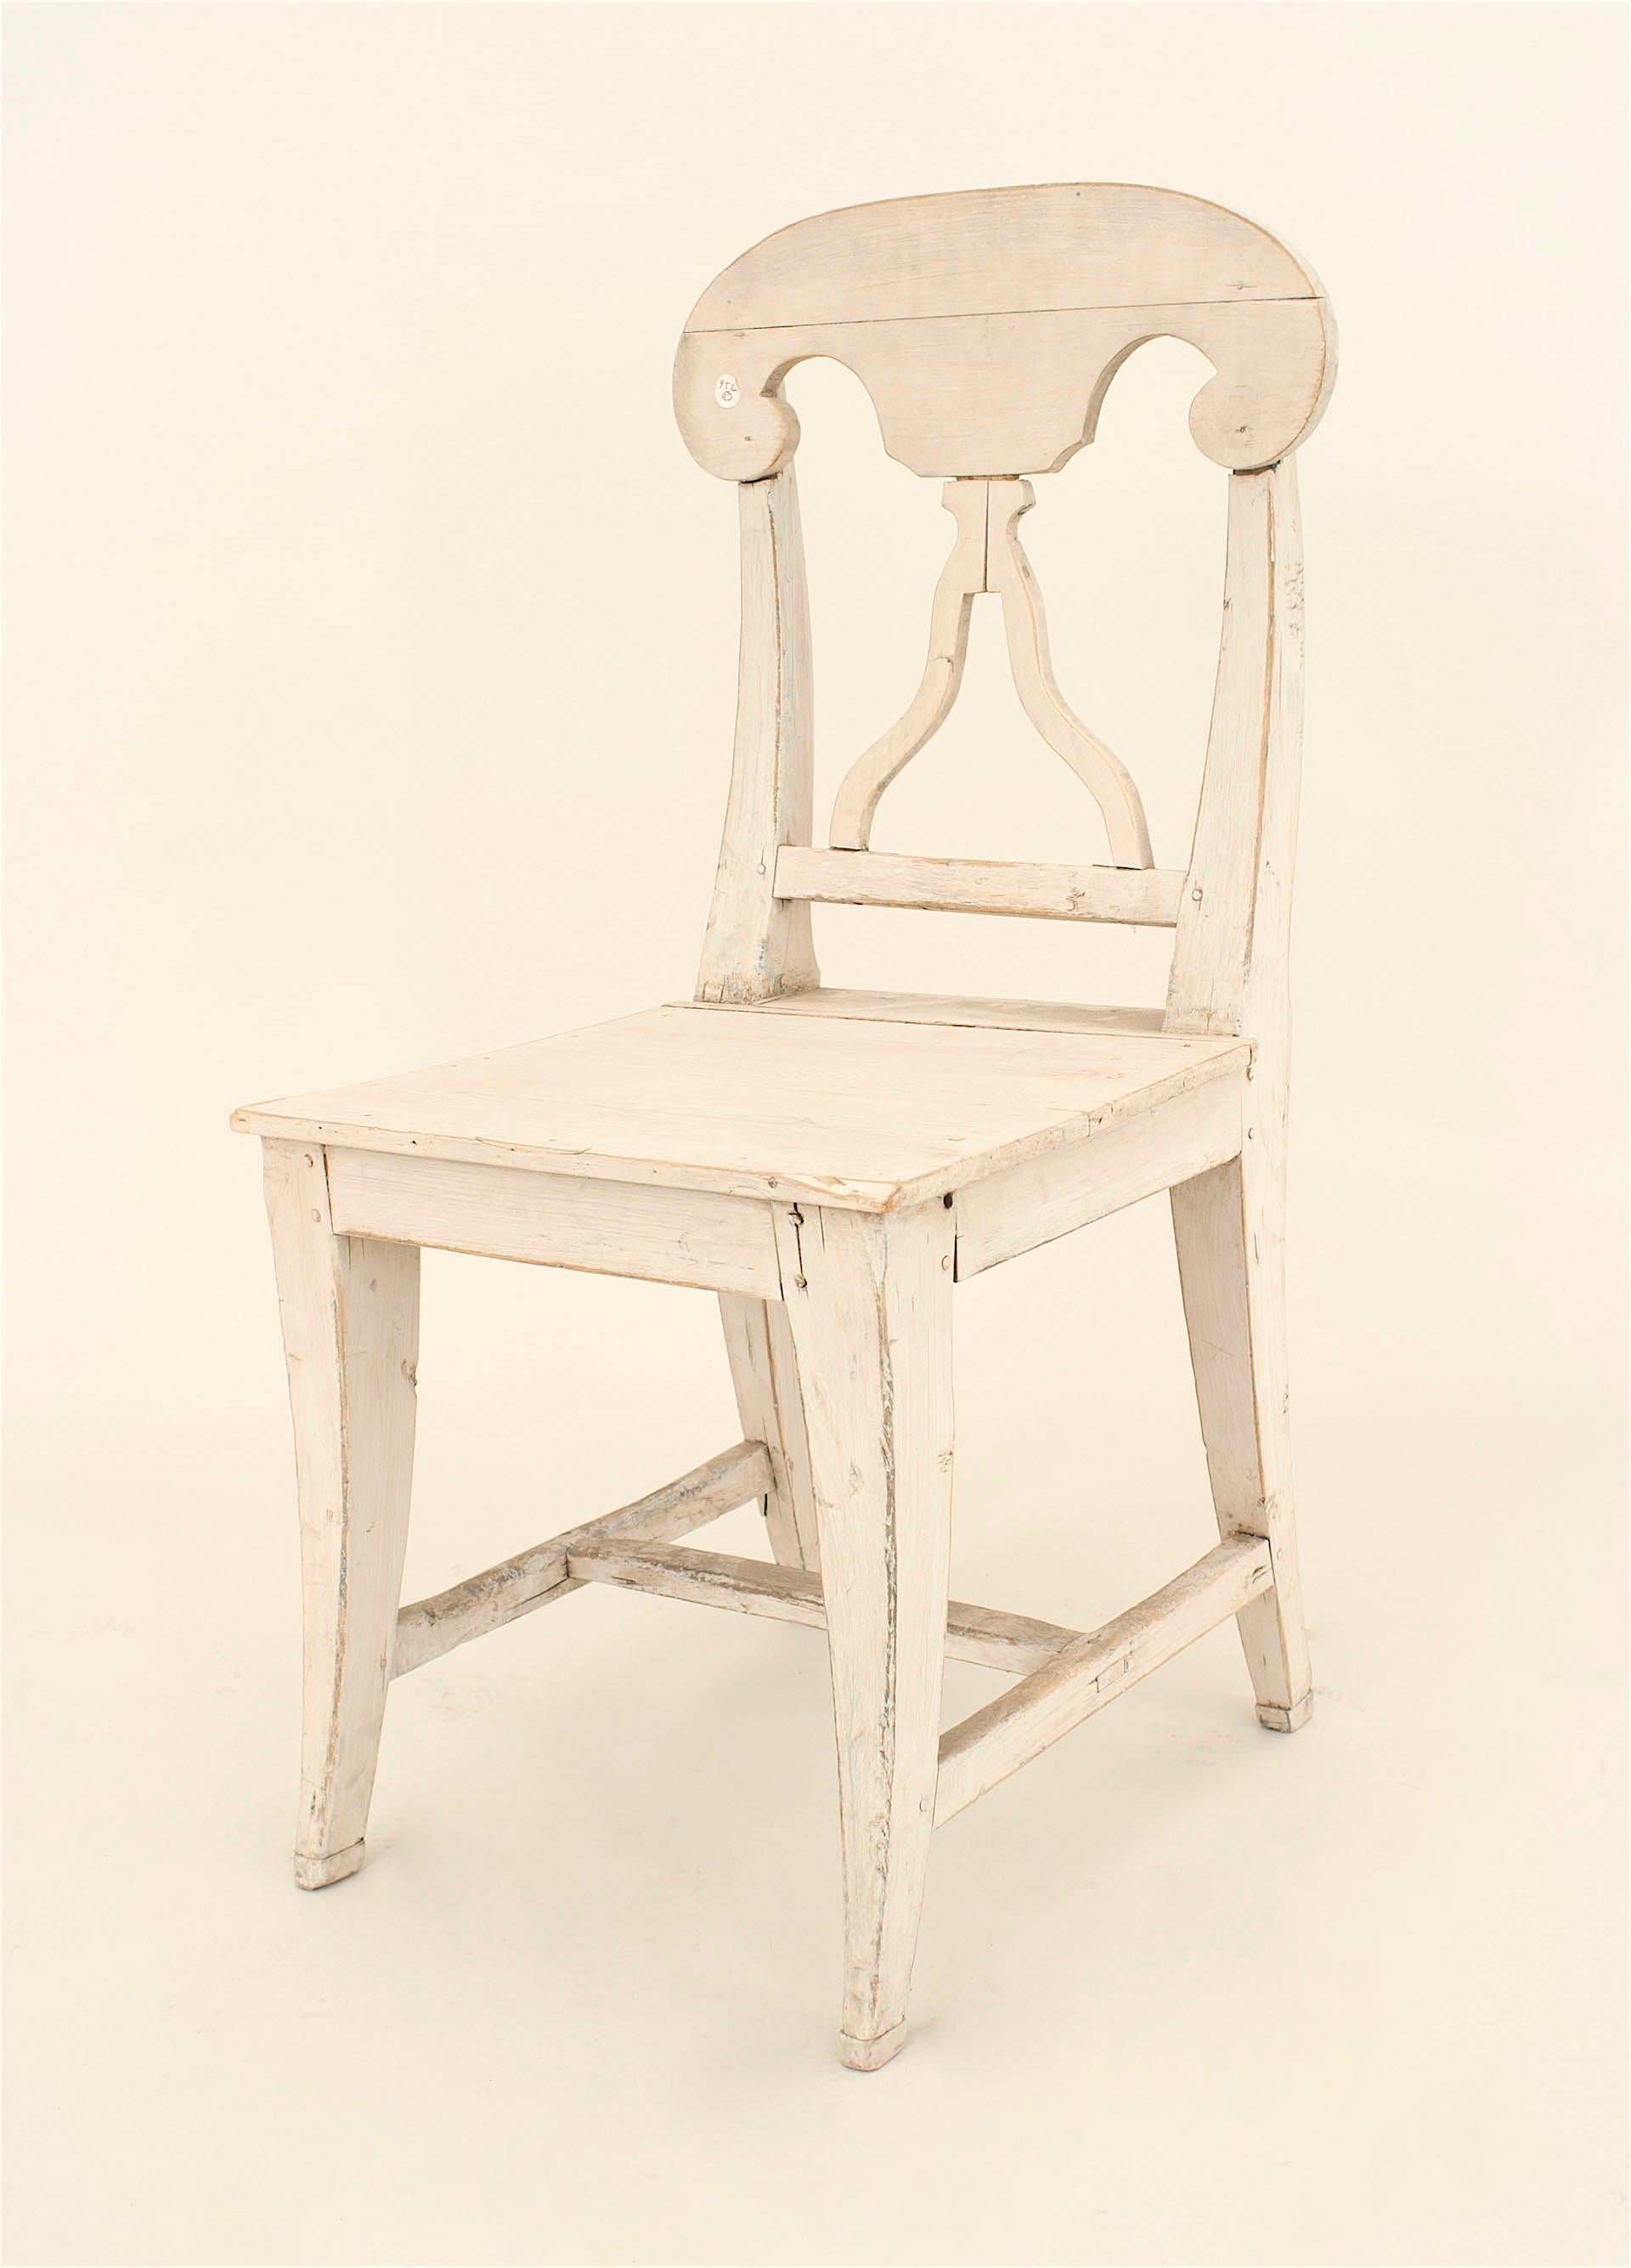 Satz von 6 schwedischen Gustavianischen Beistellstühlen aus der Mitte des Jahrhunderts mit einer antik-weiß lackierten Oberfläche und einer offenen Rückenlehne
